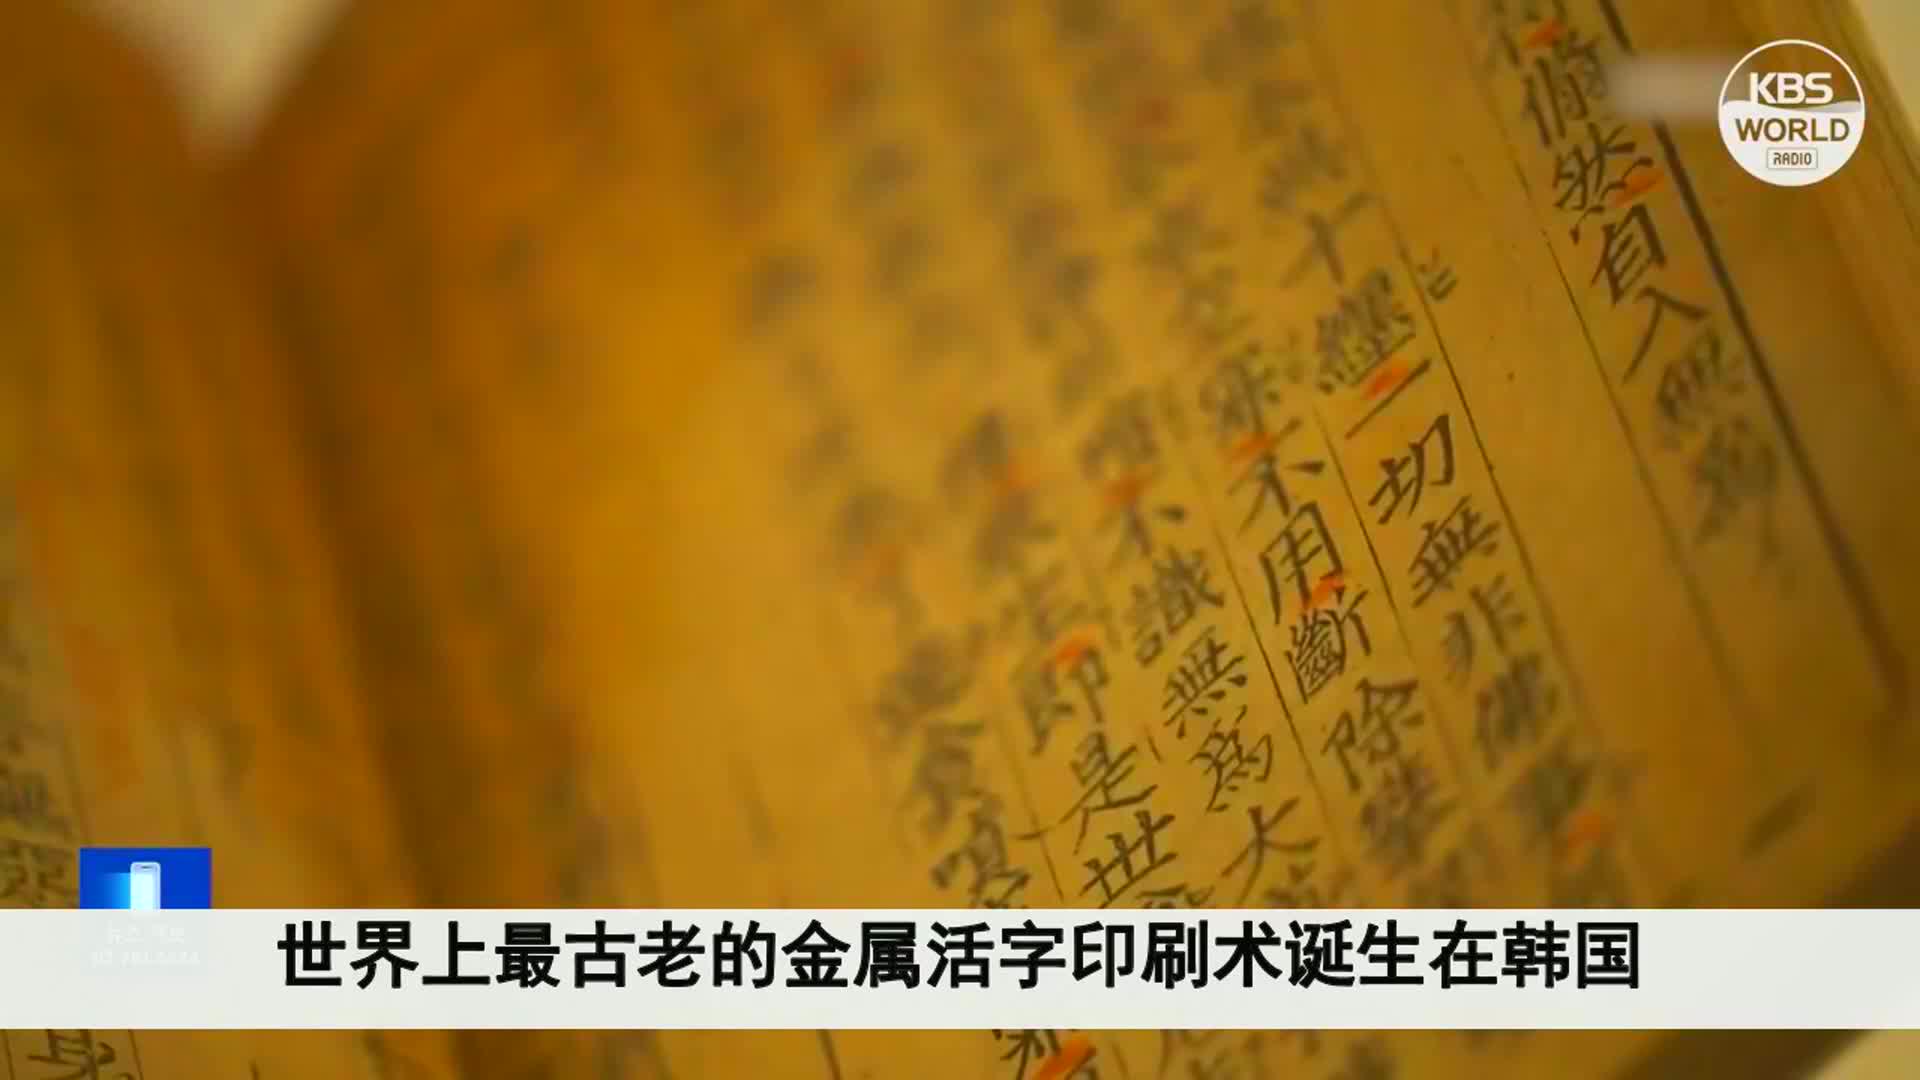 韩国又抢活字发明，《直指》参加法国展览，宣称世界最早活字印刷